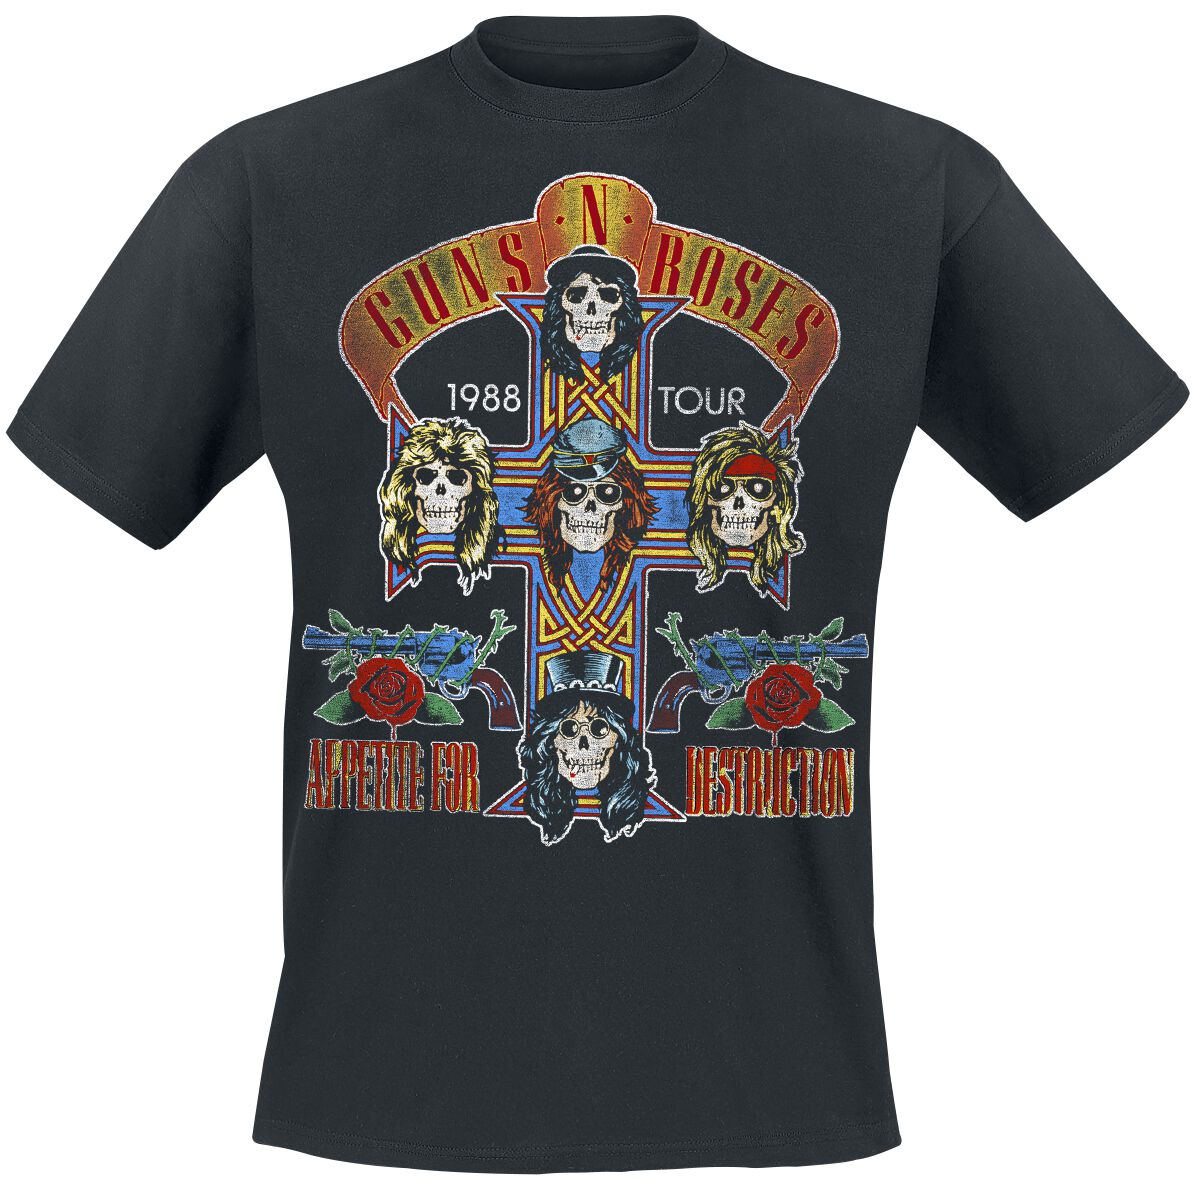 Guns N' Roses T-Shirt - Tour 1988 - XXL bis 5XL - für Männer - Größe 3XL - schwarz  - Lizenziertes Merchandise! von Guns N' Roses